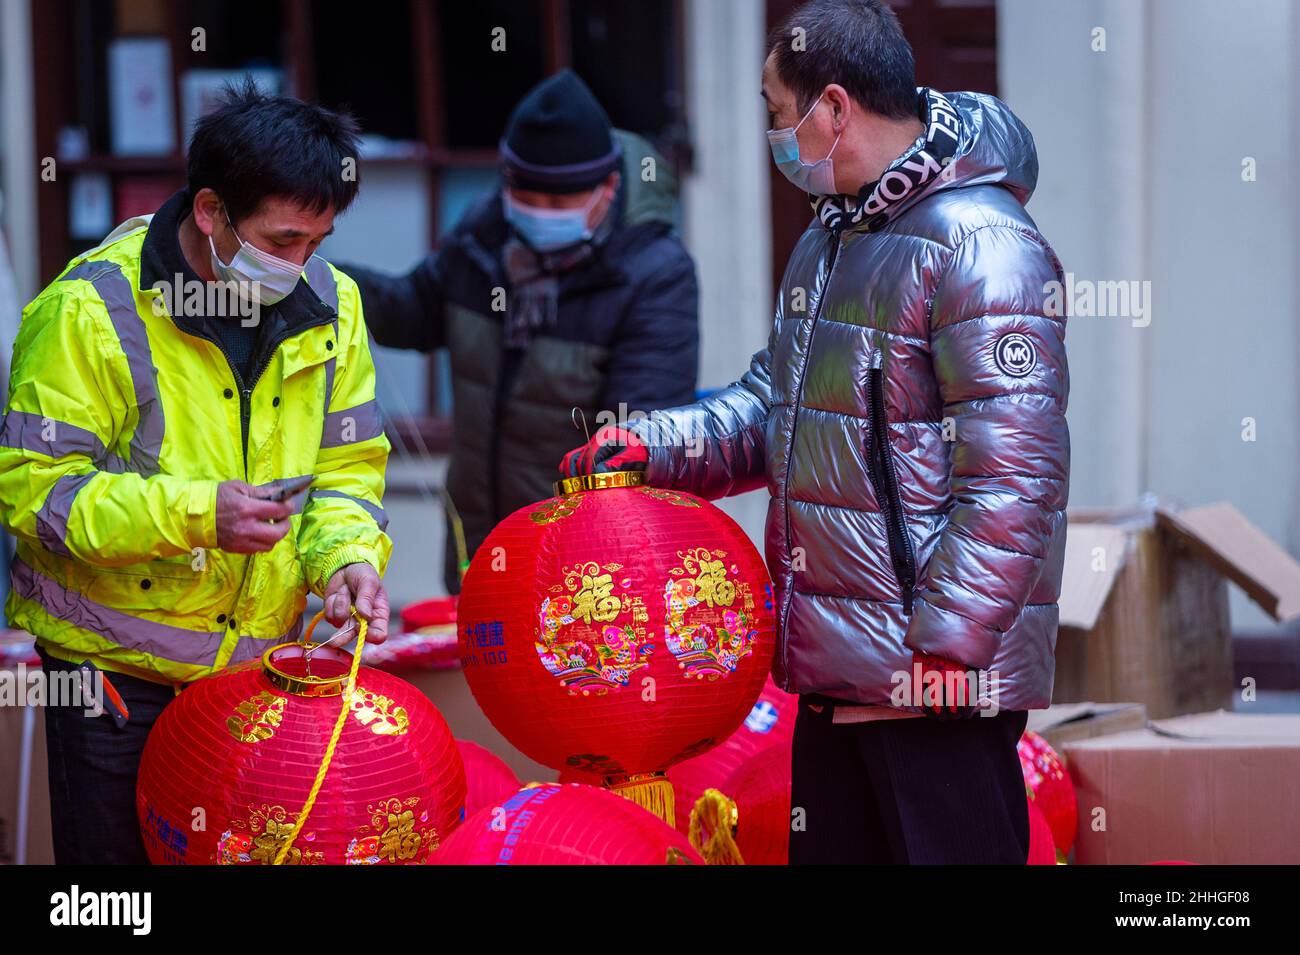 Londres, Royaume-Uni.24 janvier 2022.Des ouvriers assemblent des lanternes à Chinatown avant le nouvel an chinois et l'année du tigre commence officiellement le 1 février.Les festivités sur Chinatown sont réduites cette année à la pandémie.Credit: Stephen Chung / Alamy Live News Banque D'Images